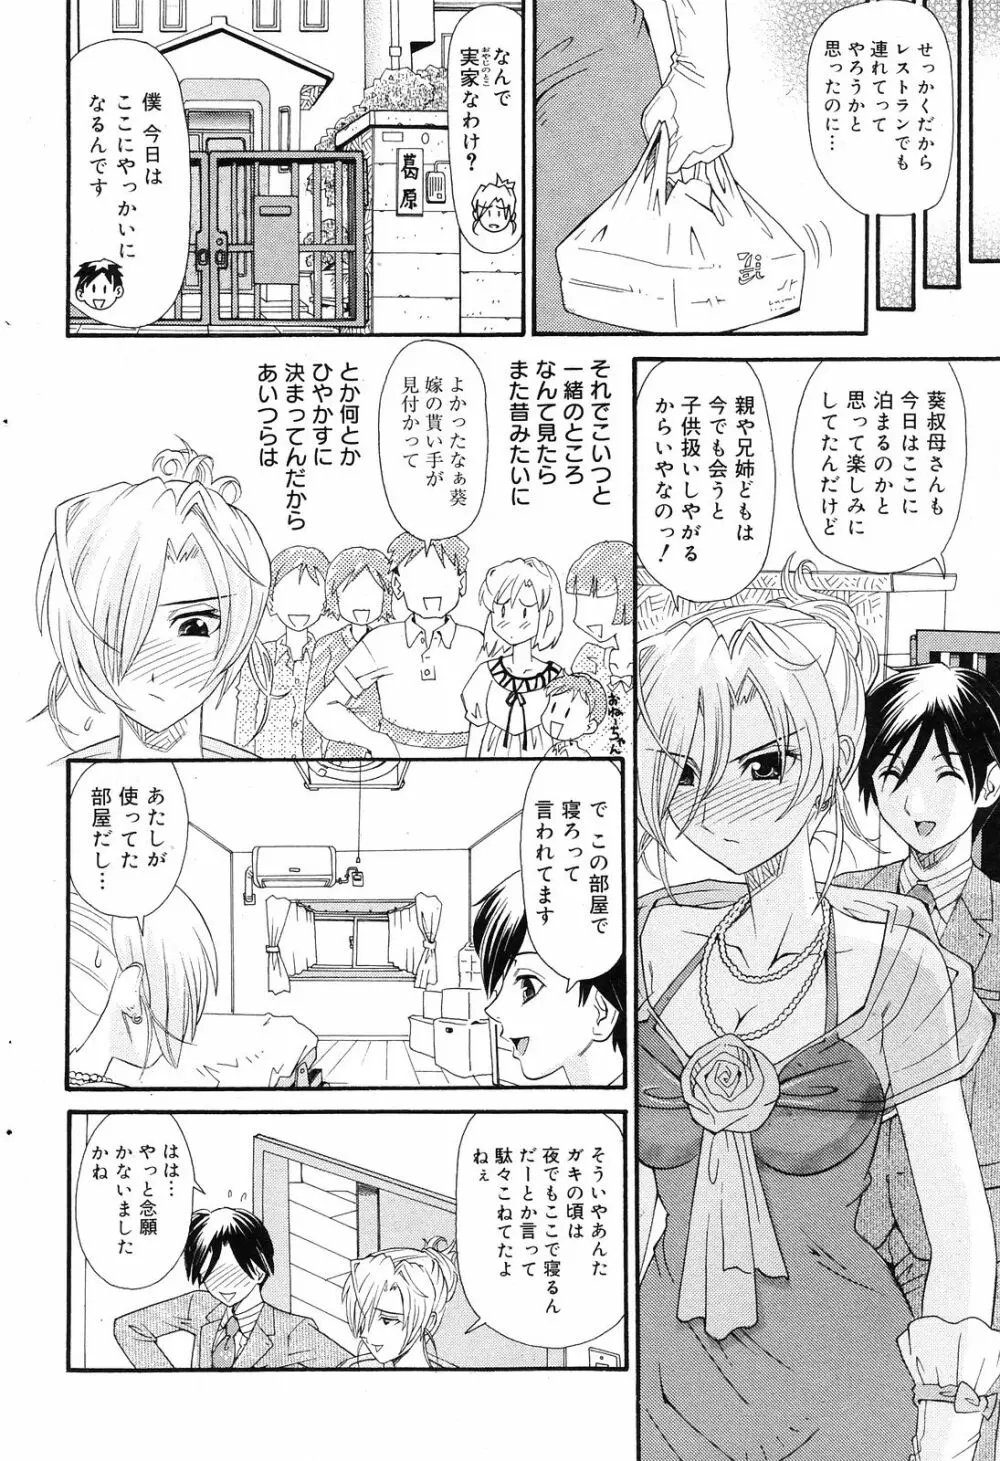 Manga Bangaichi 2008-12 84ページ